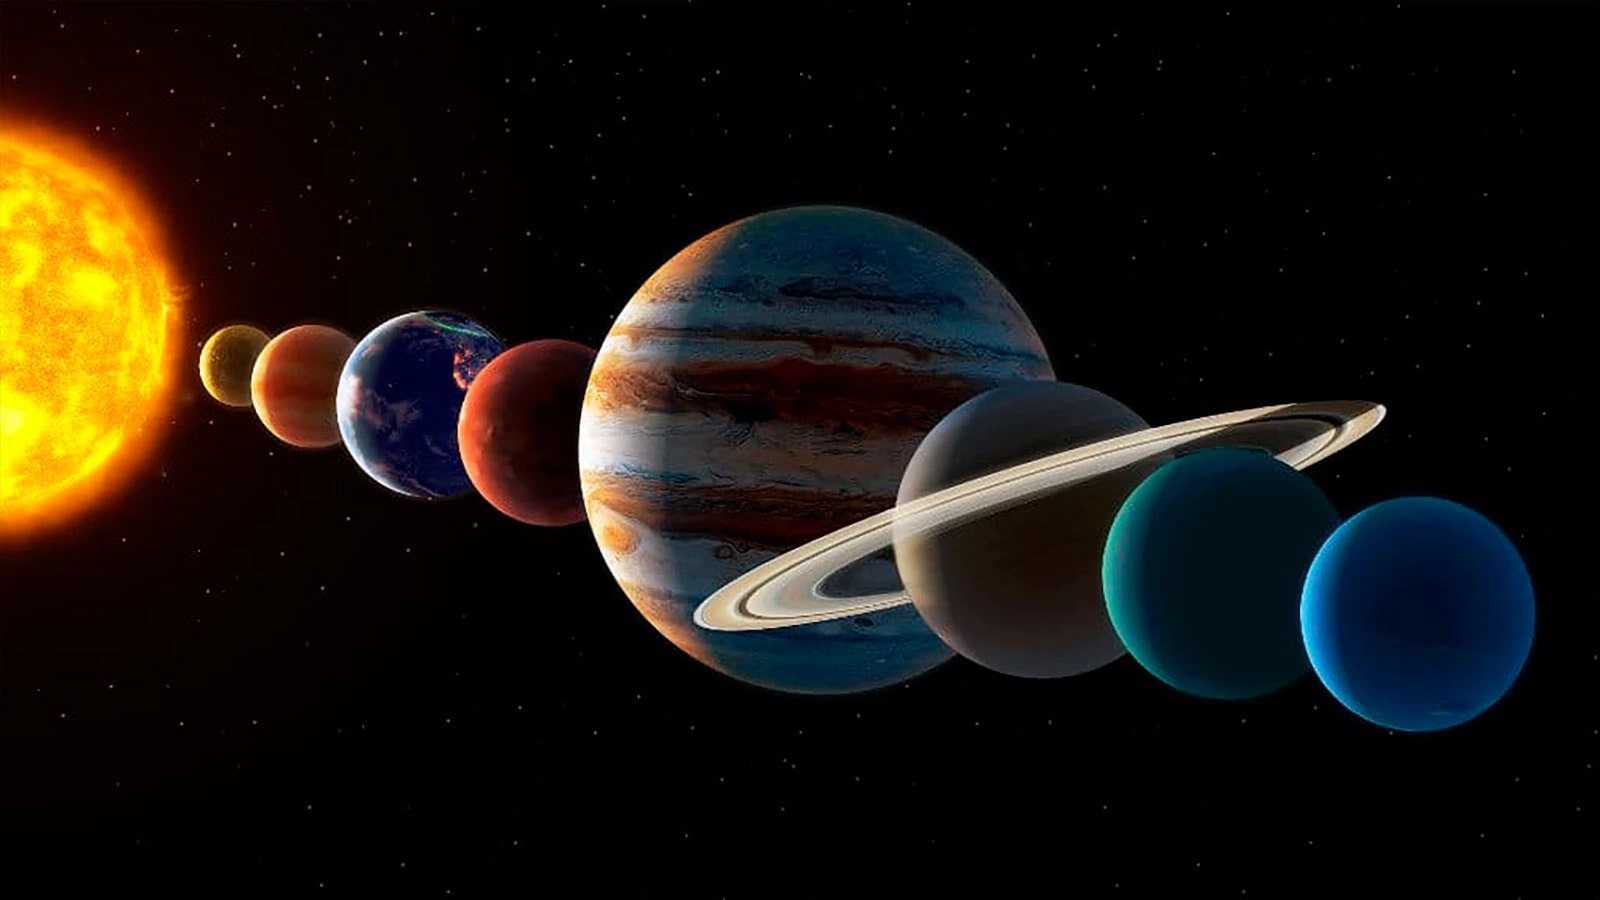 3 червня можна буде побачити Великий парад планет: як відрізнити планети від зірок